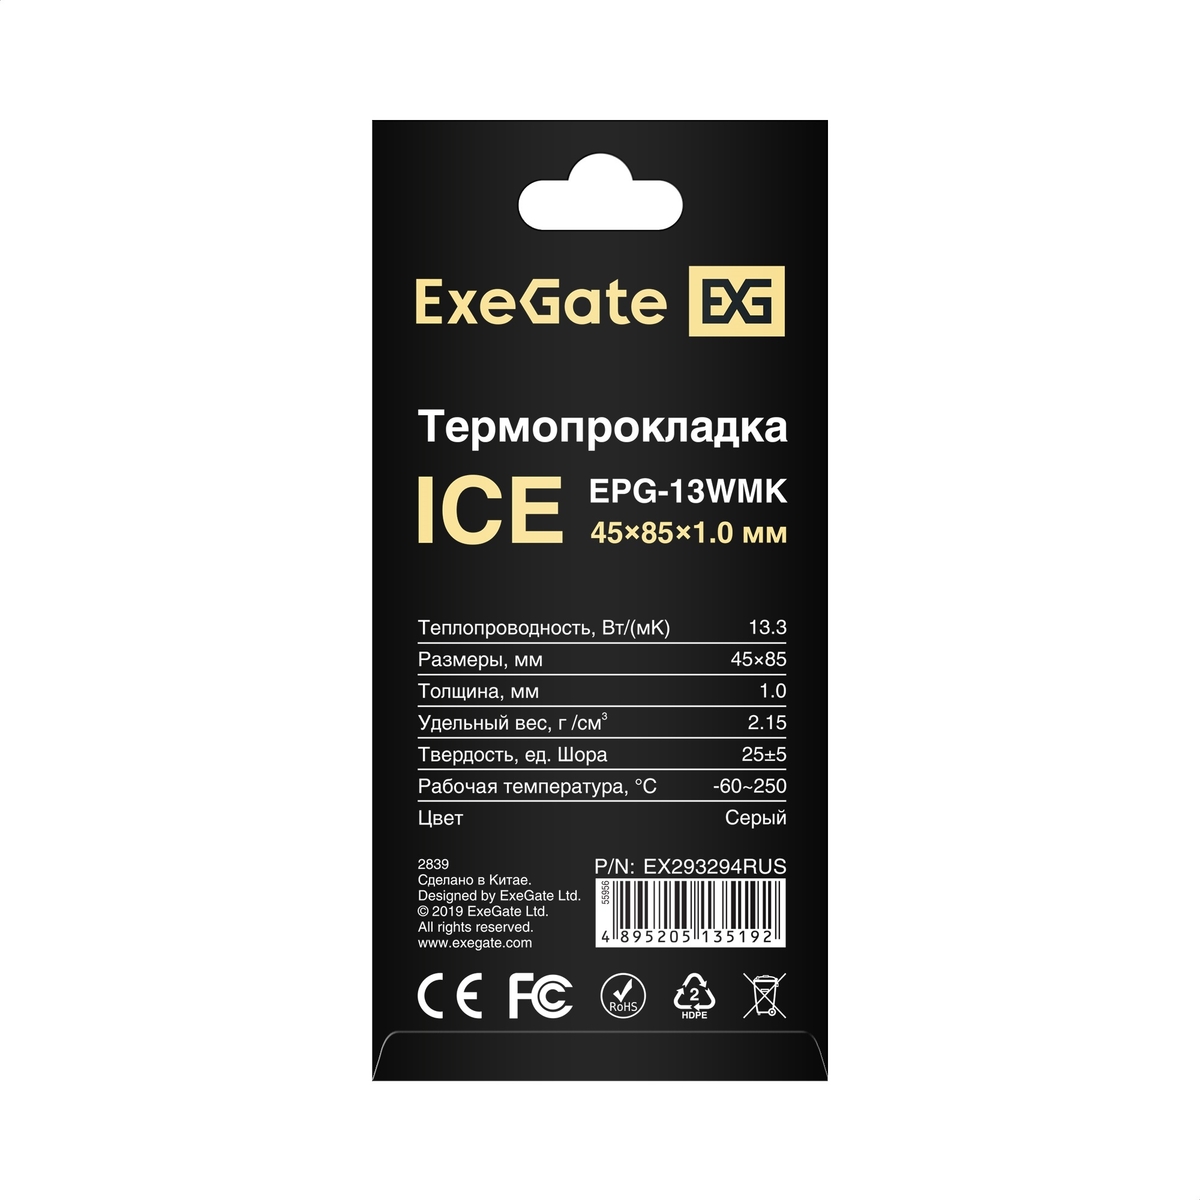  ExeGate Ice EPG-13WMK 45x85x1.0